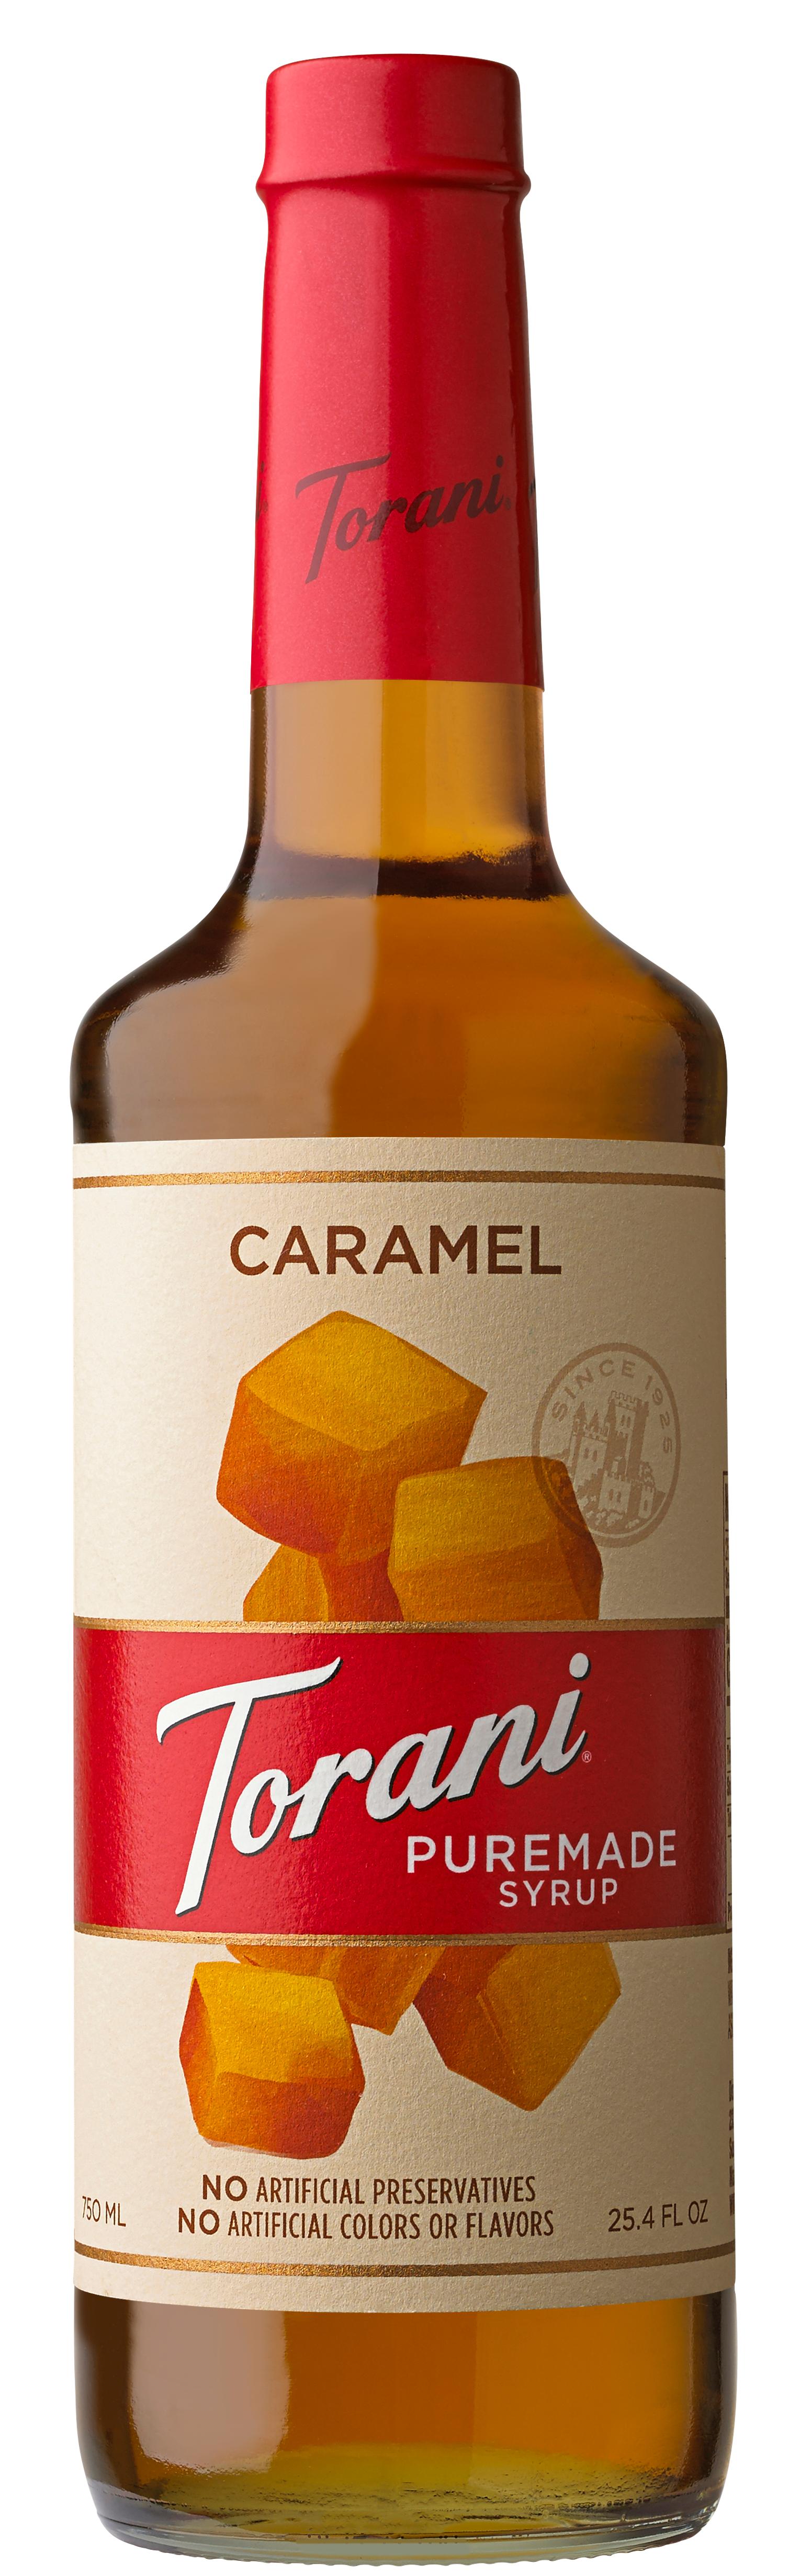 Torani-puremade-caramel